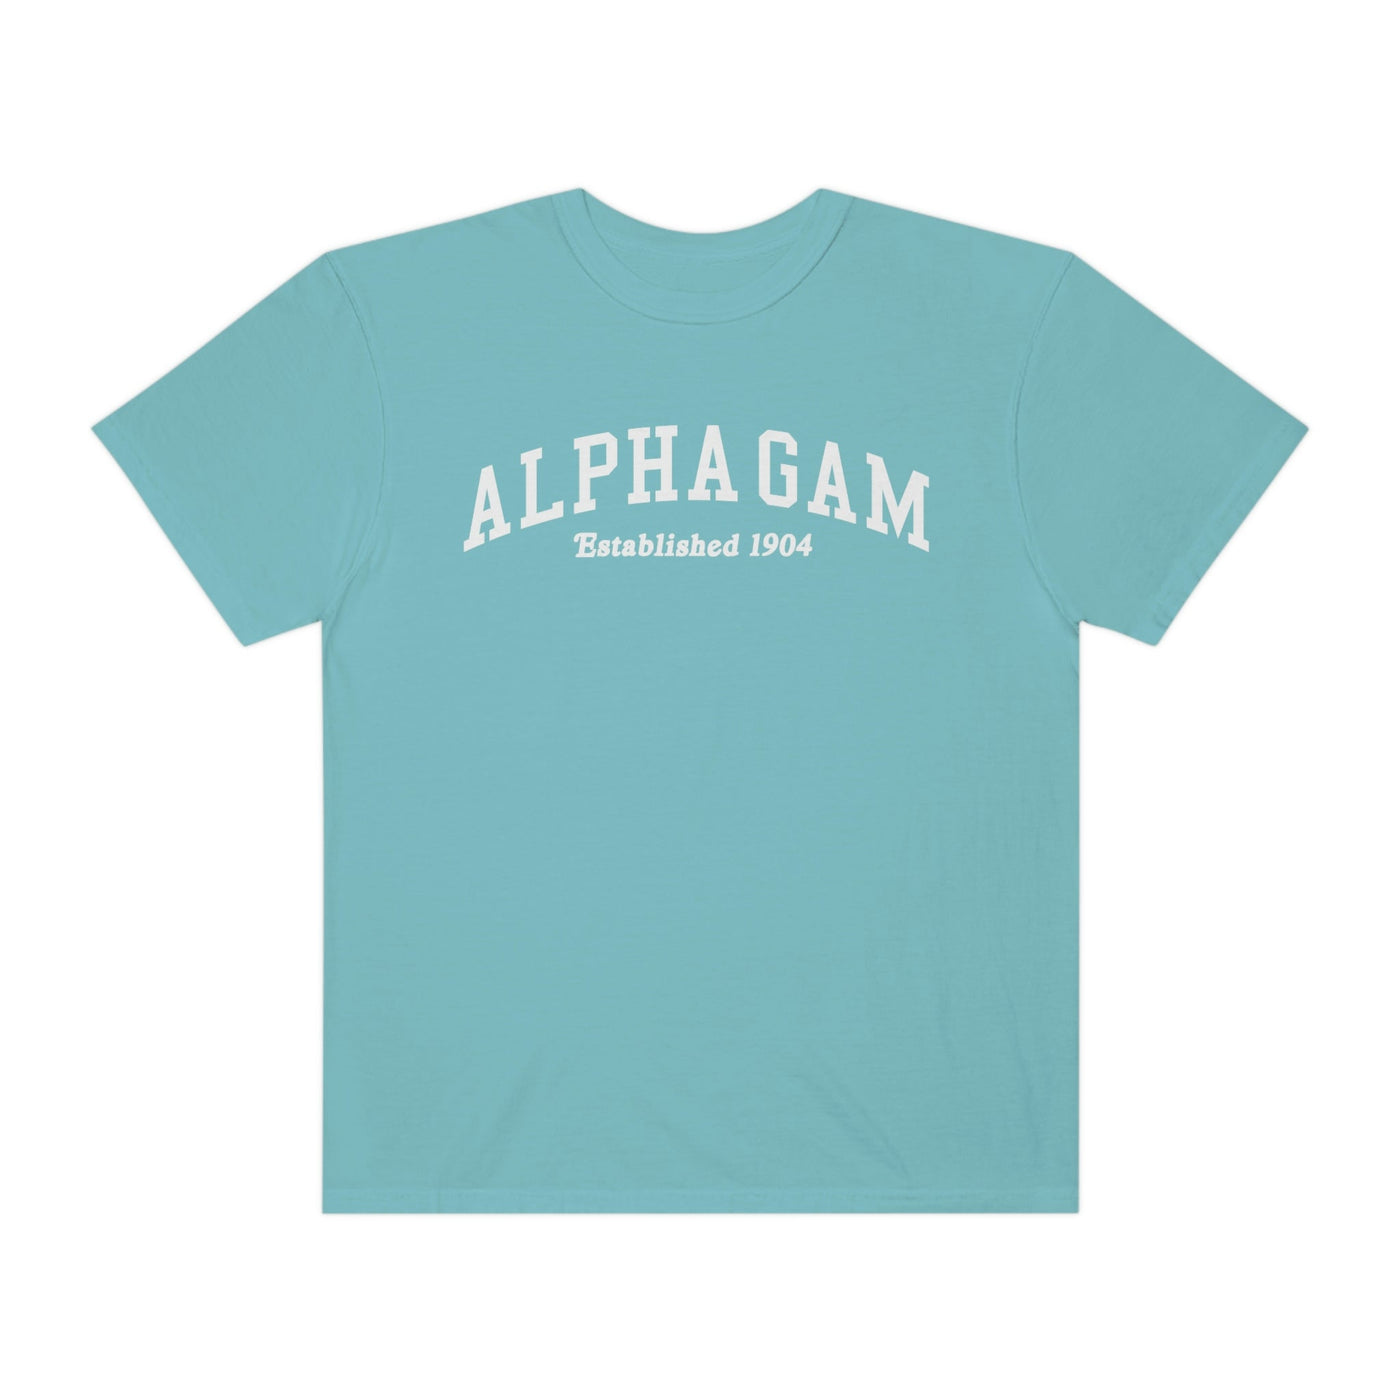 Alpha Gamma Delta Varsity College Sorority Comfy T-Shirt